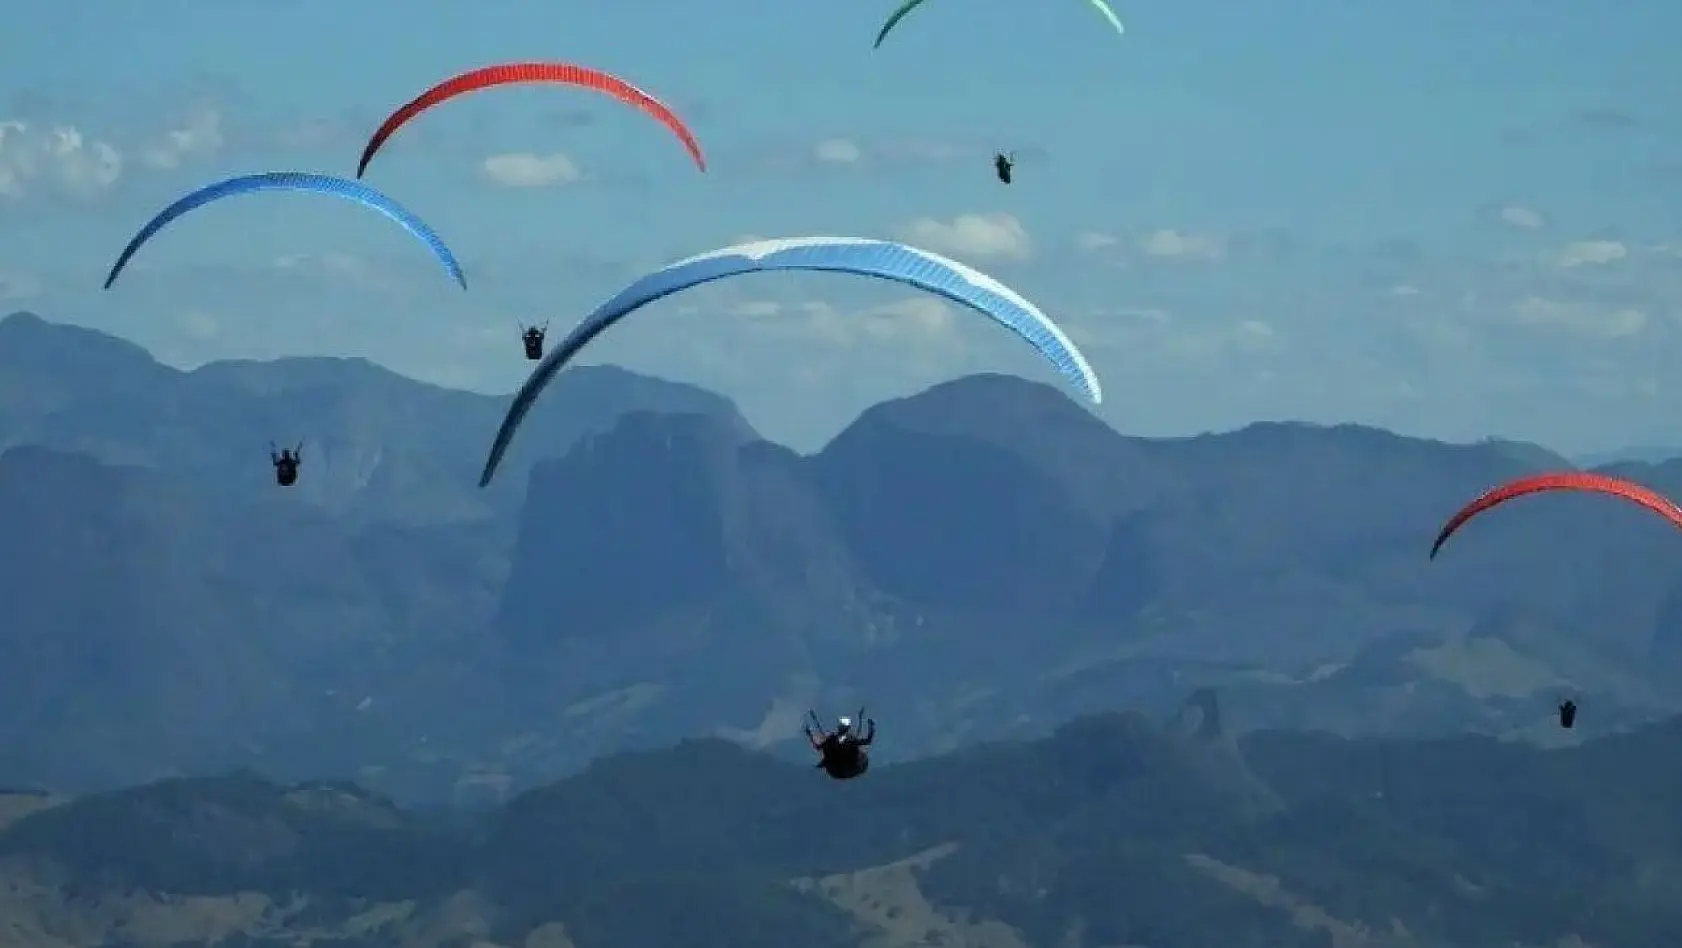 Çameli Yamaç Paraşütü takımı, Brezilya'da 3.'cü oldu